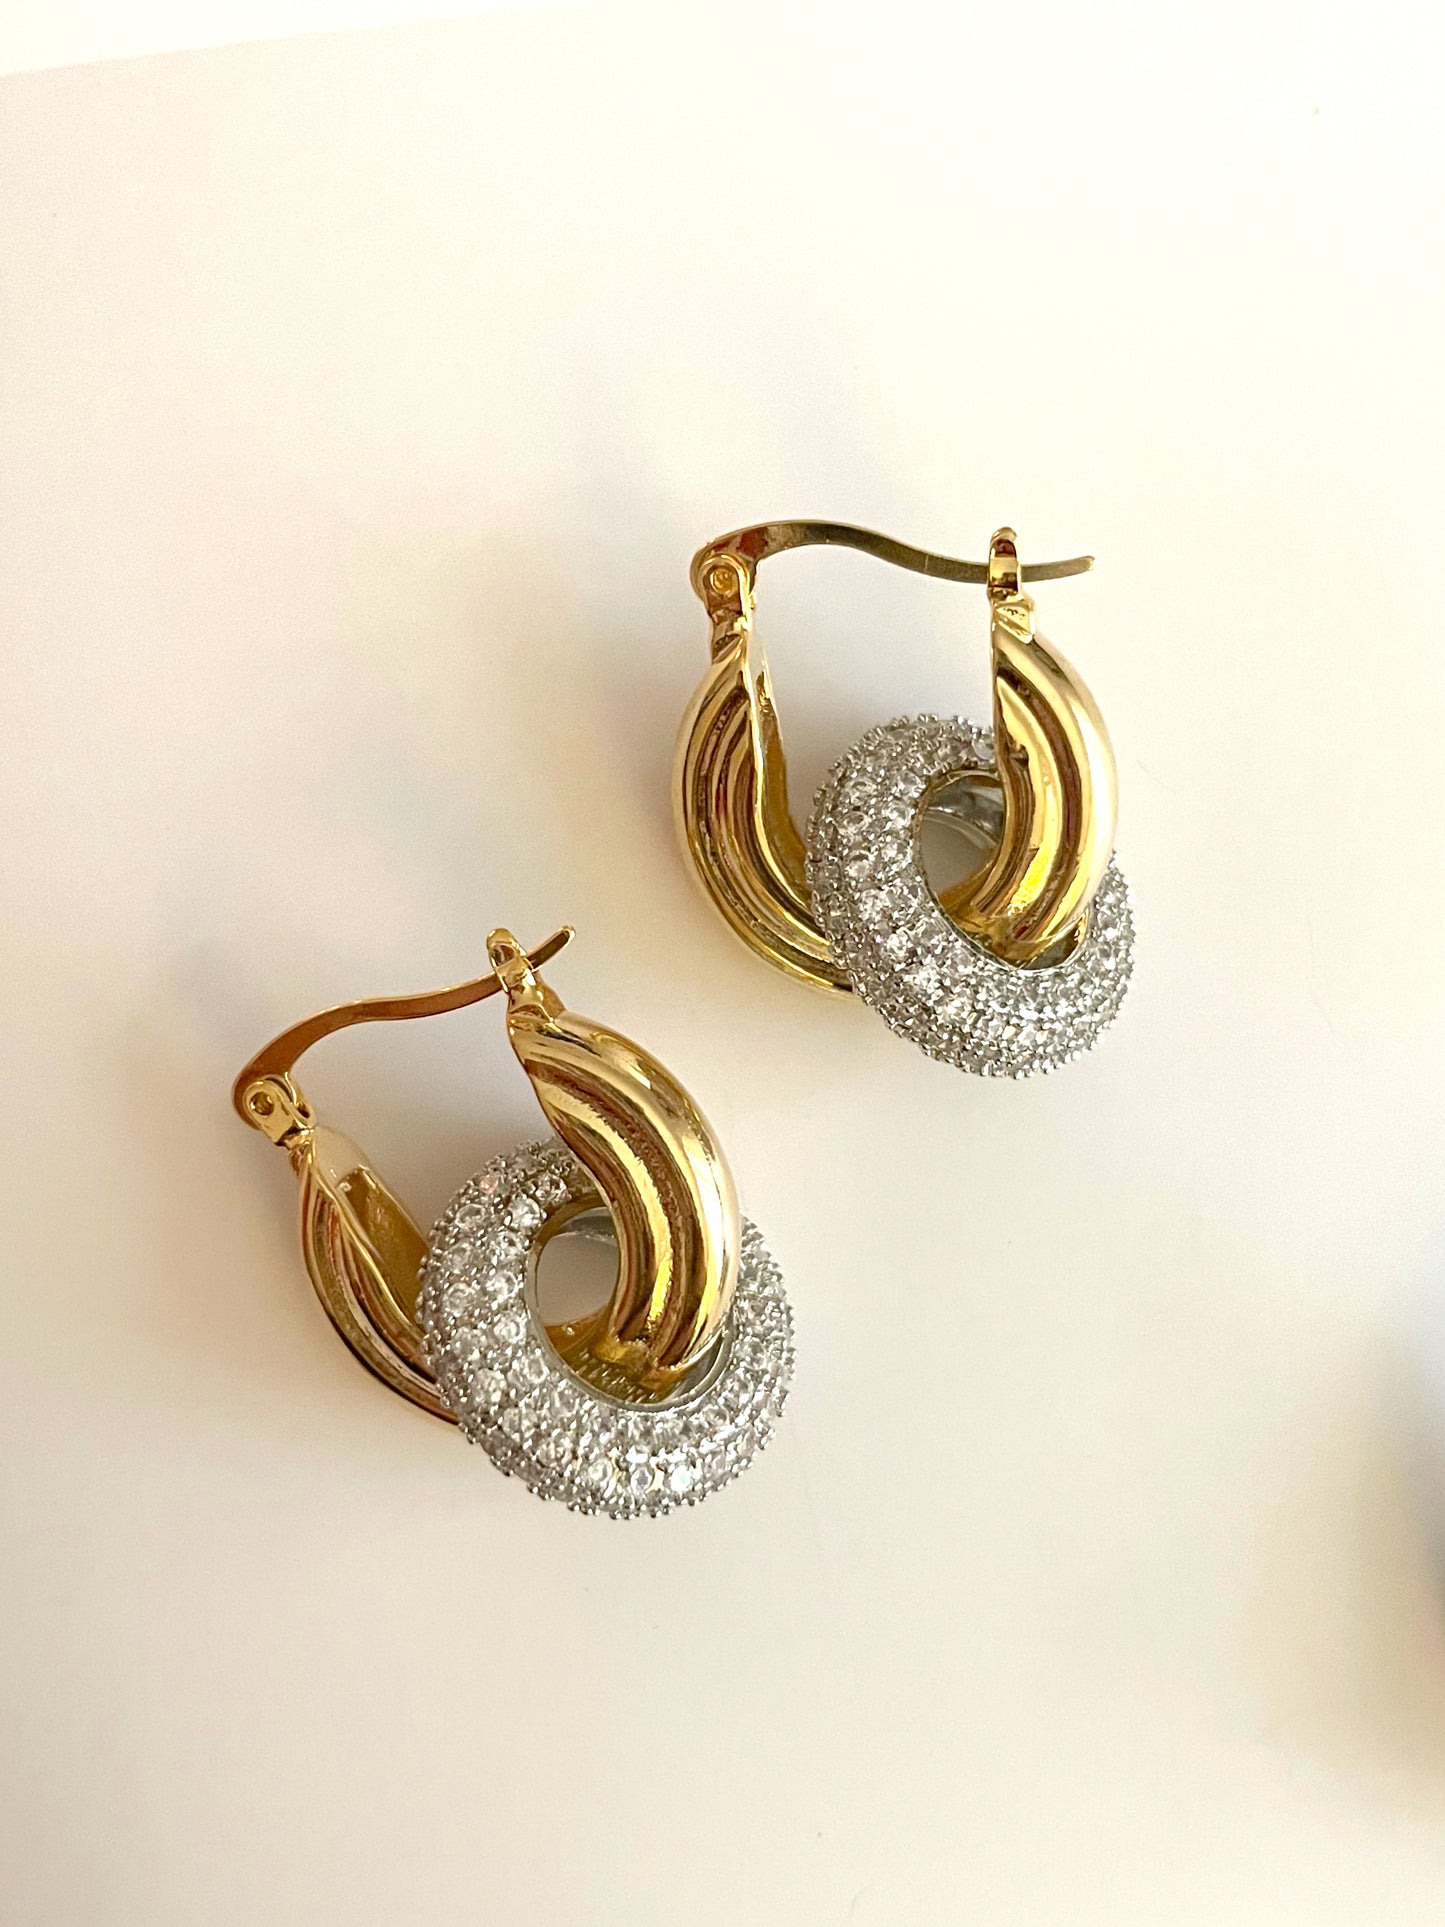 Finery earrings